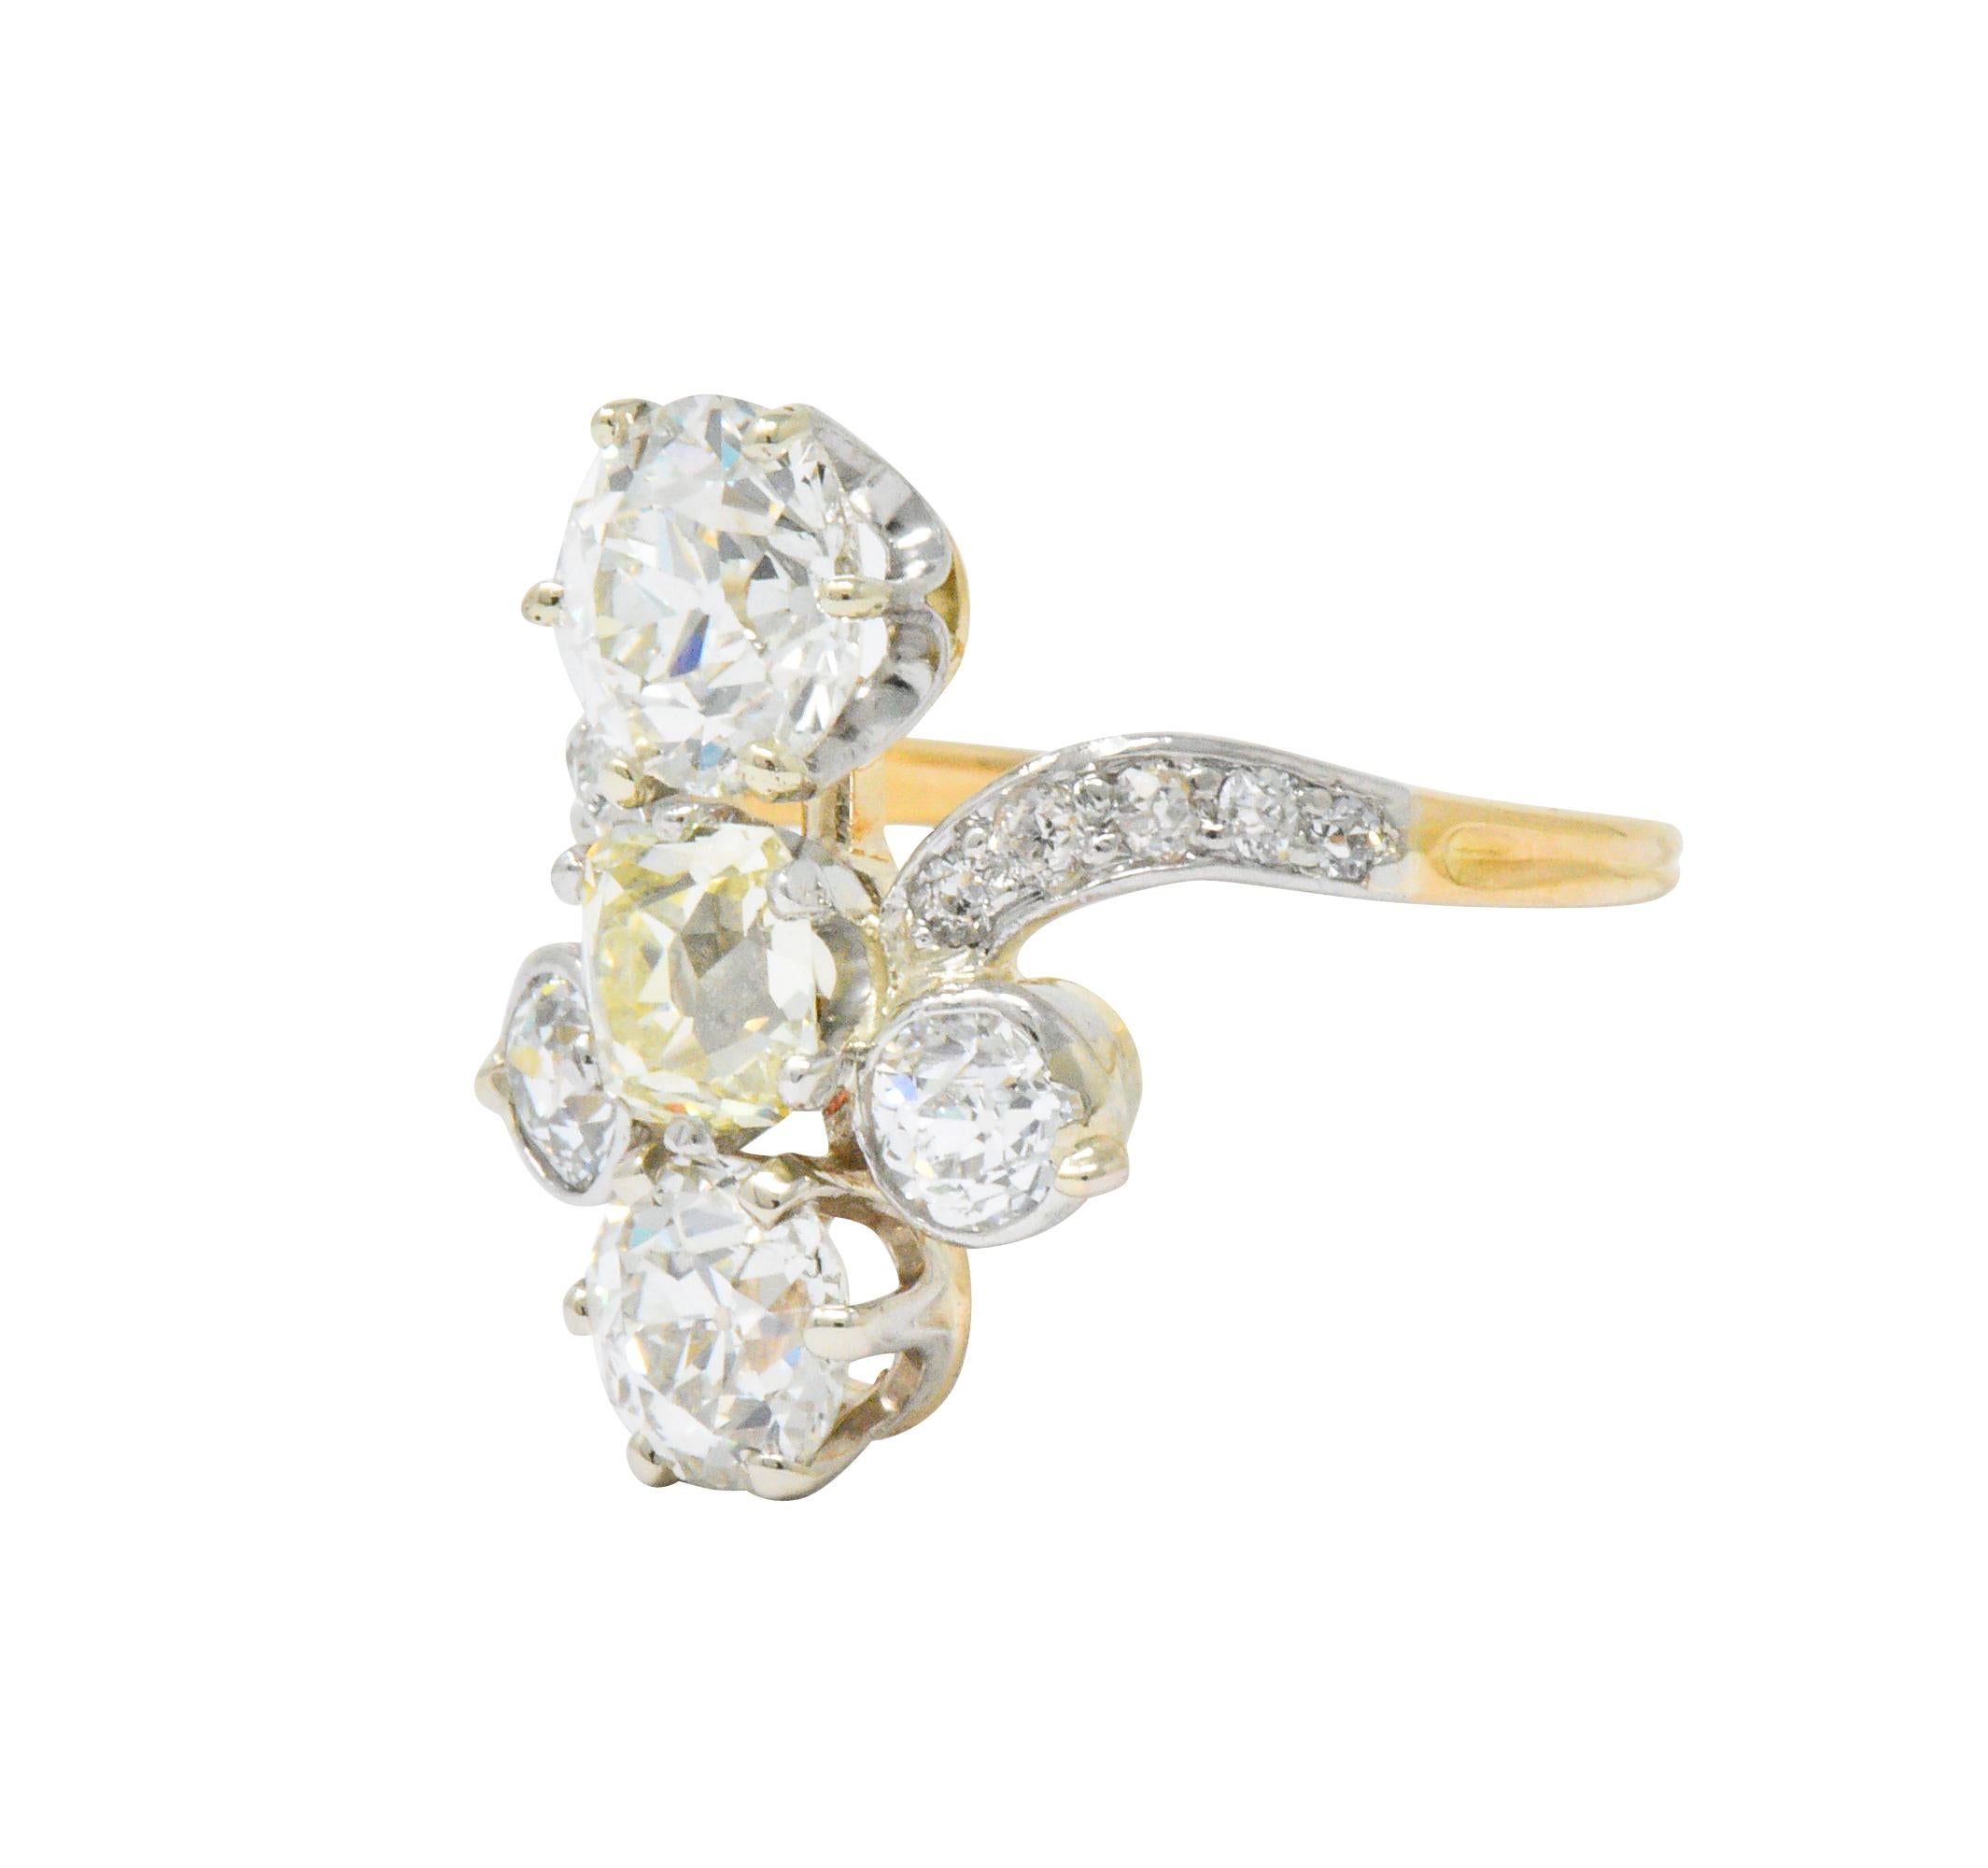 Women's or Men's Edwardian 3.95 Carat Diamond Yellow Diamond Platinum-Topped 18 Karat Gold Ring